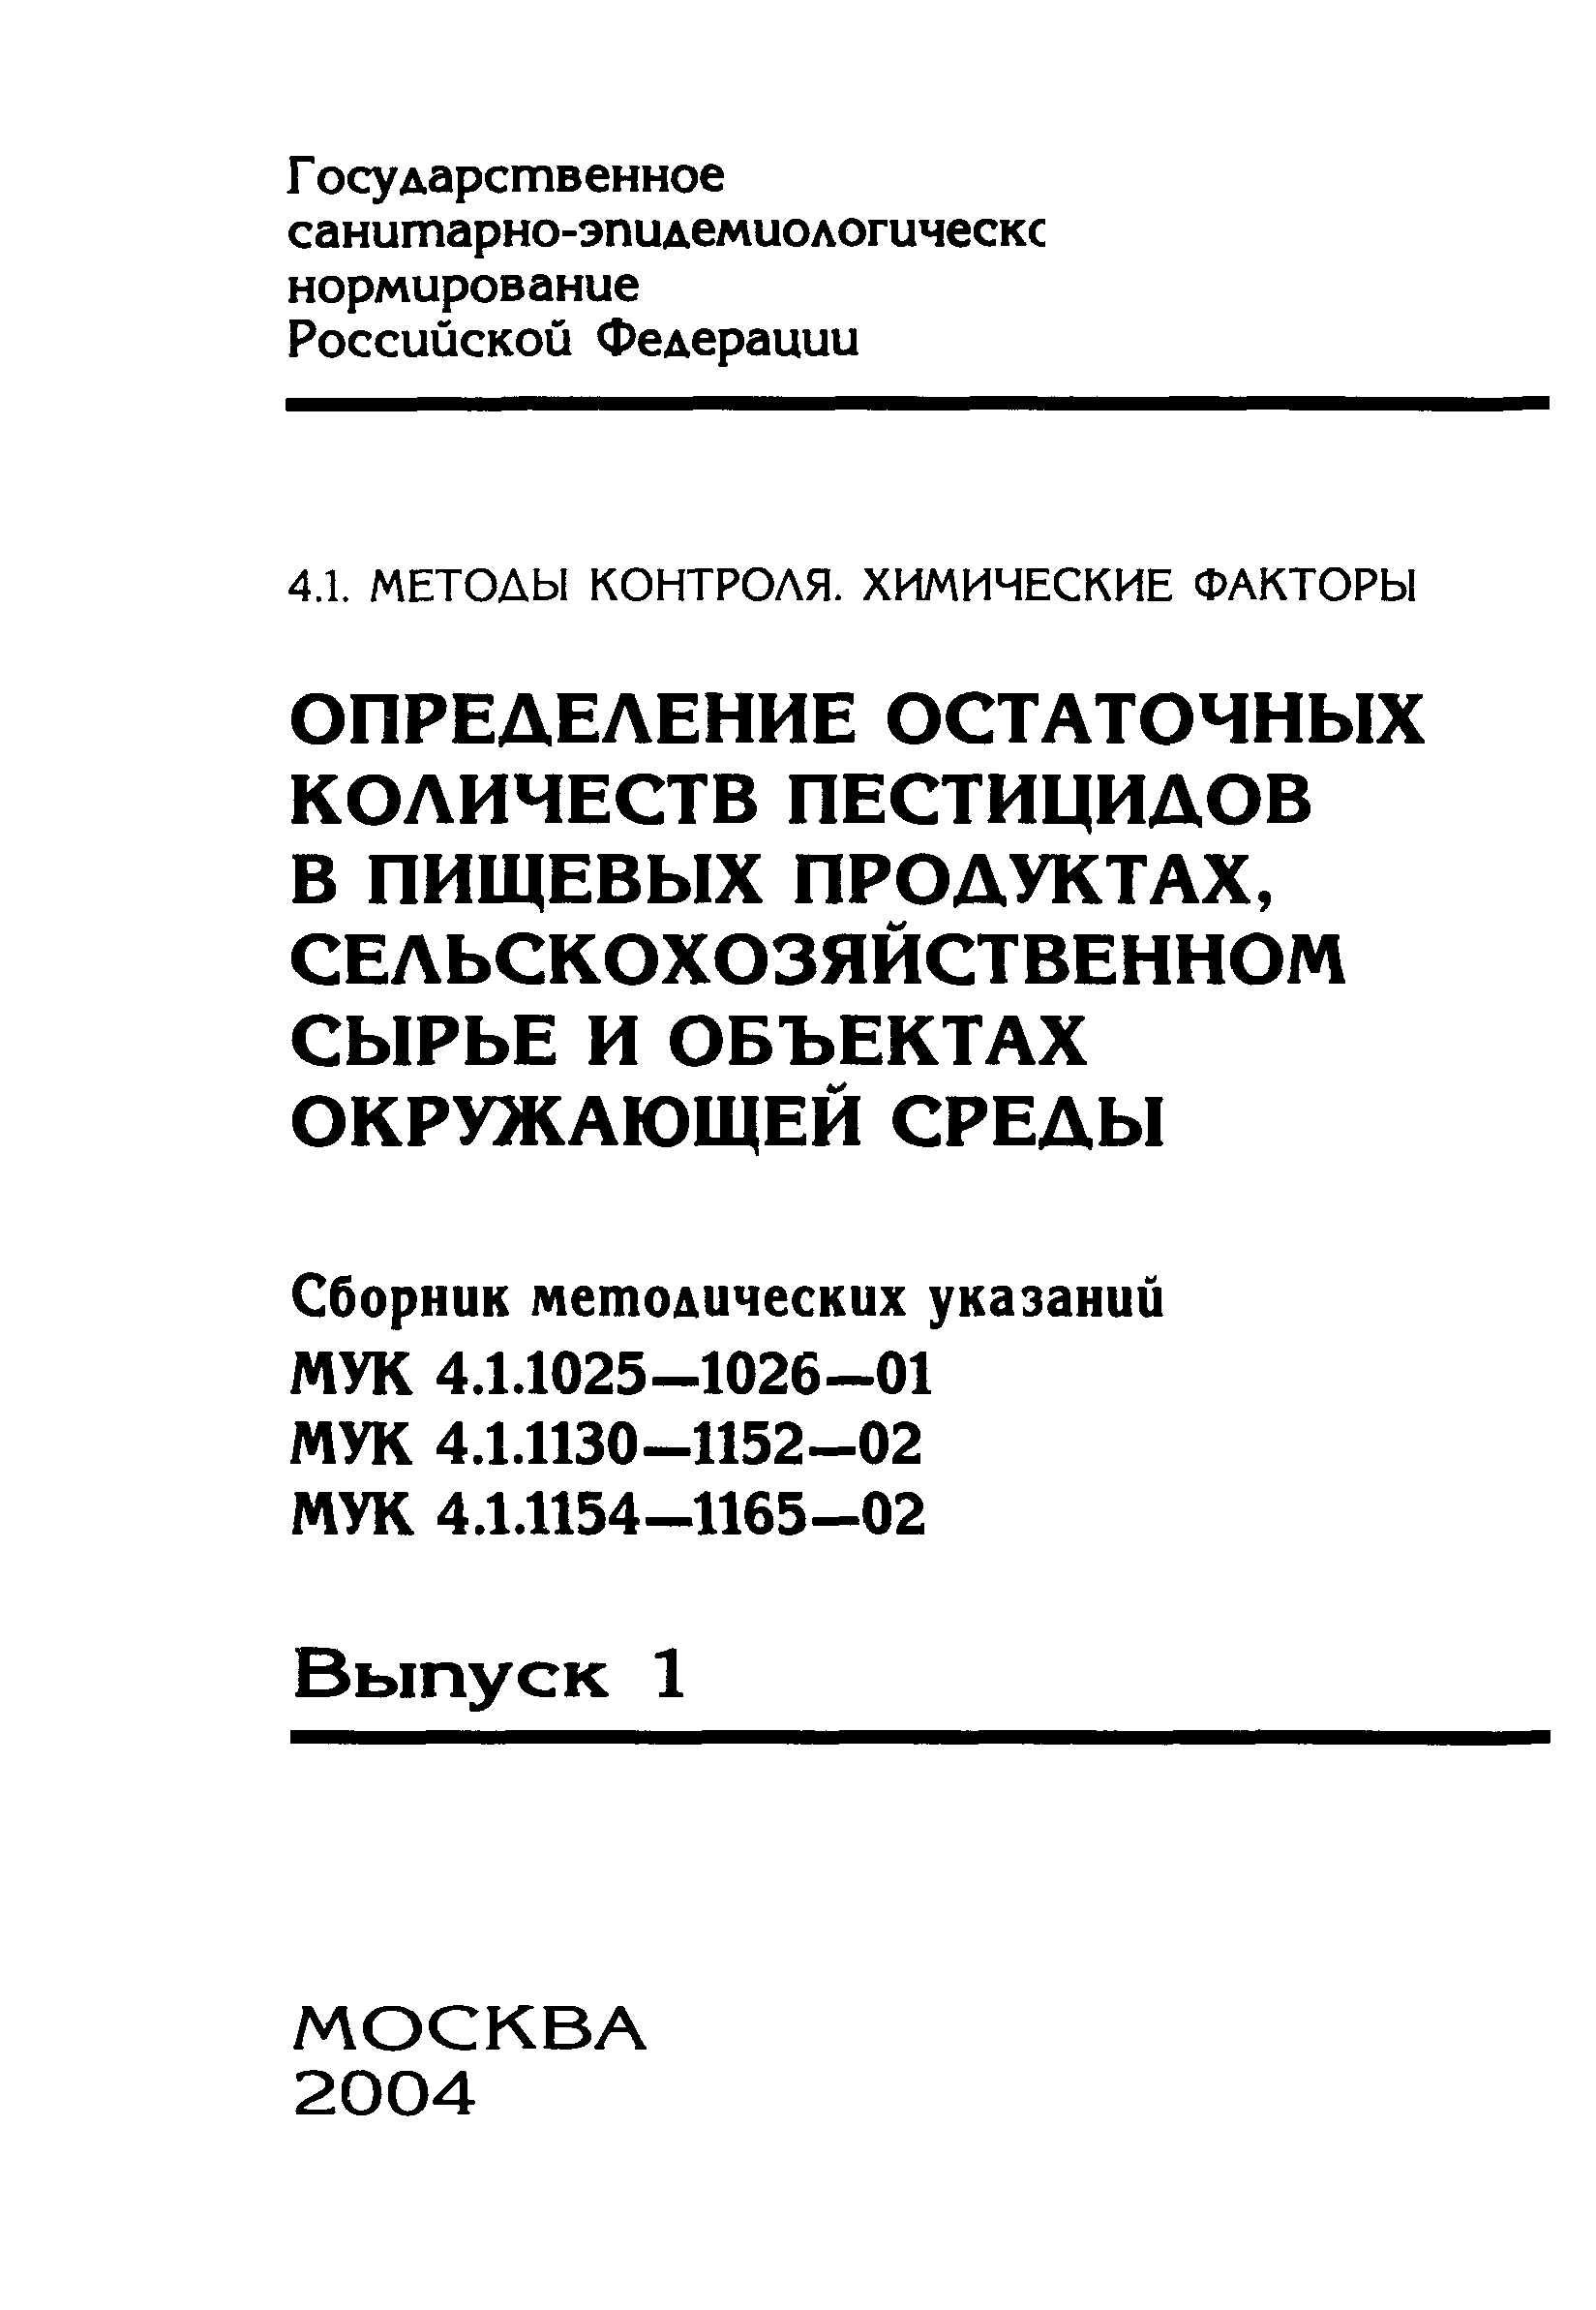 МУК 4.1.1150-02